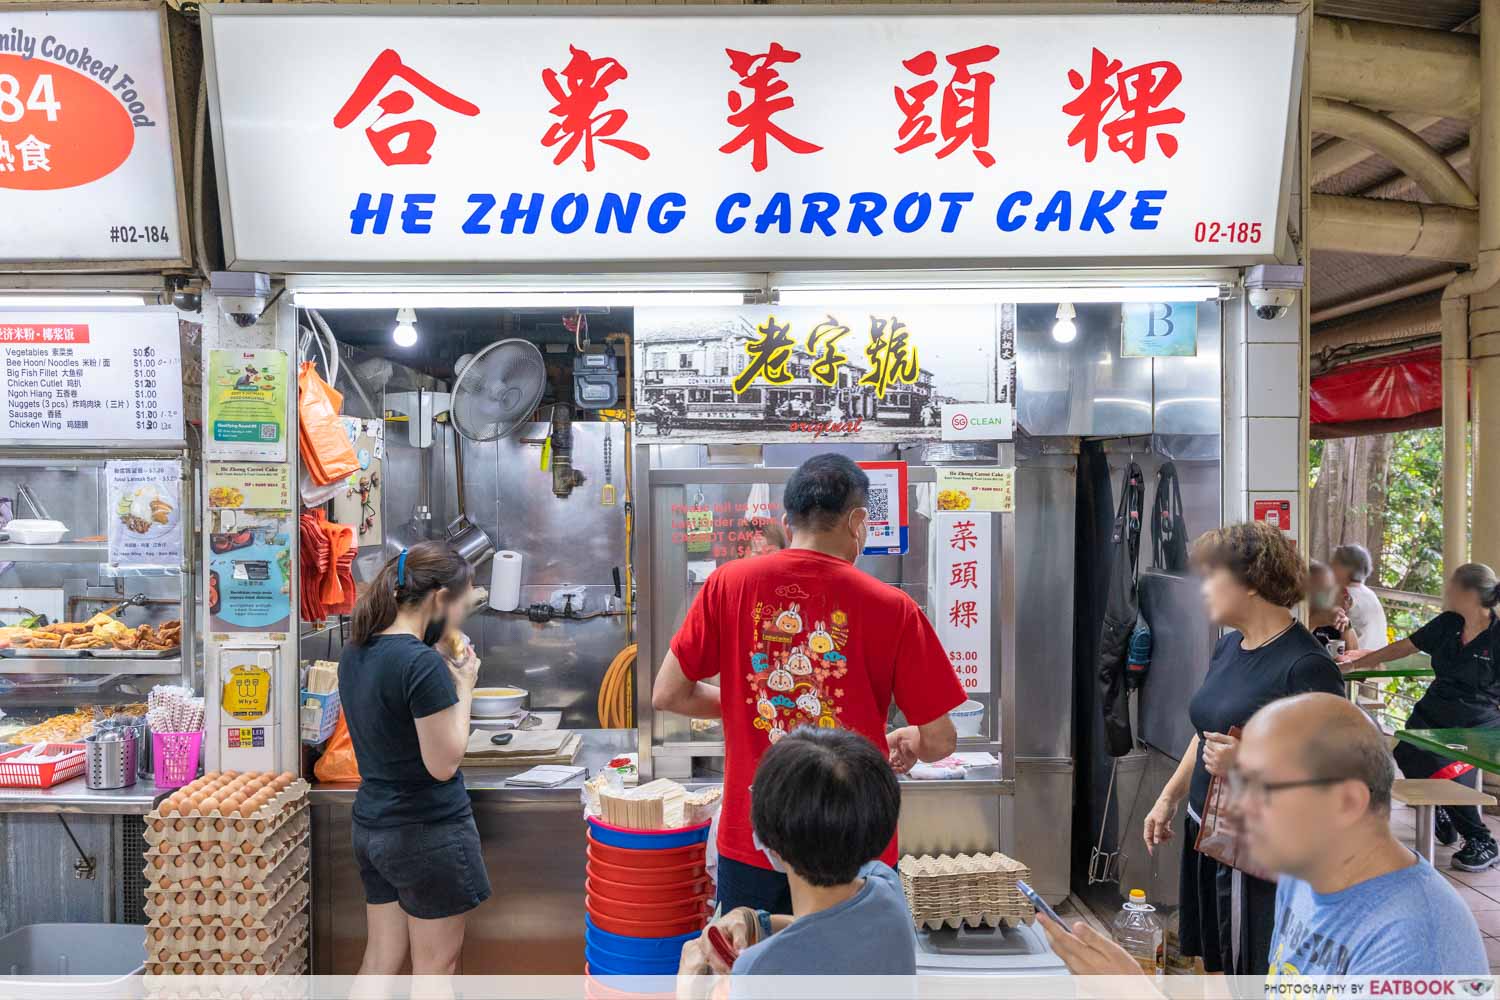 he zhong carrot cake- store front